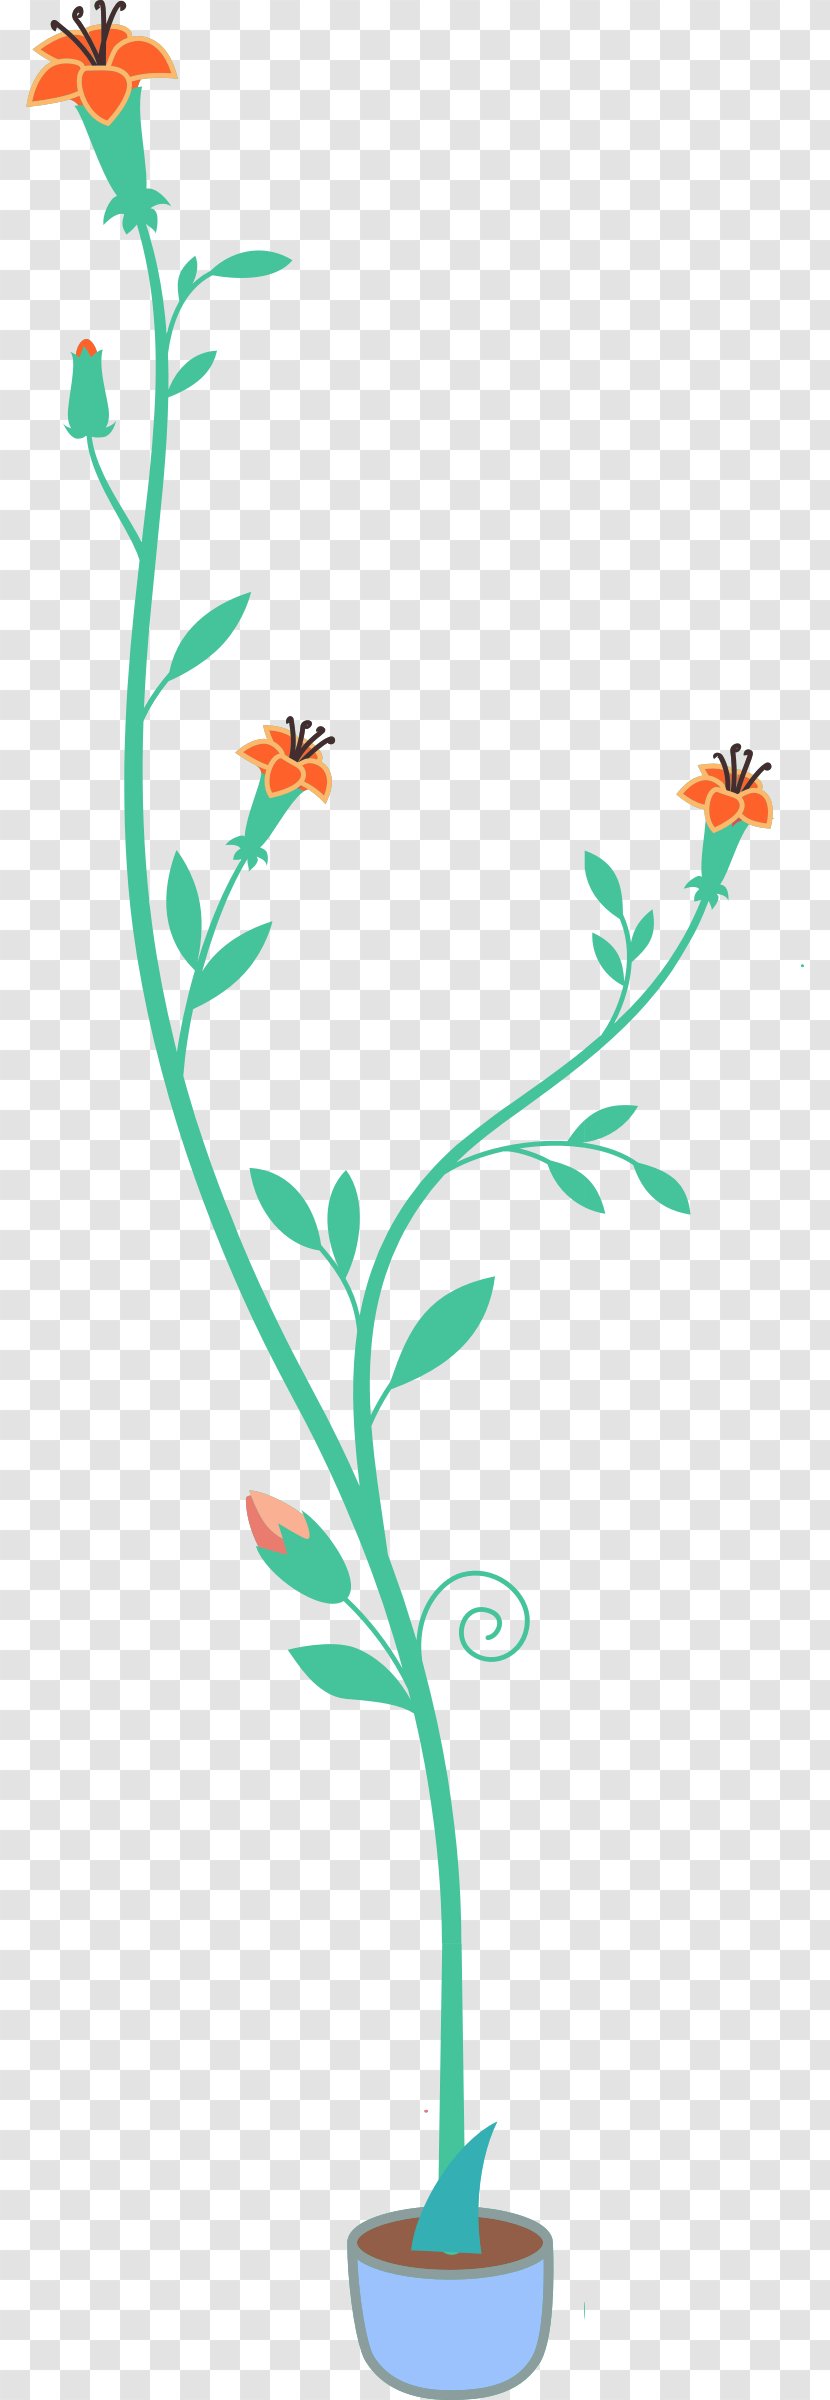 Flower Plant Clip Art - Artwork - Pot Top View Transparent PNG